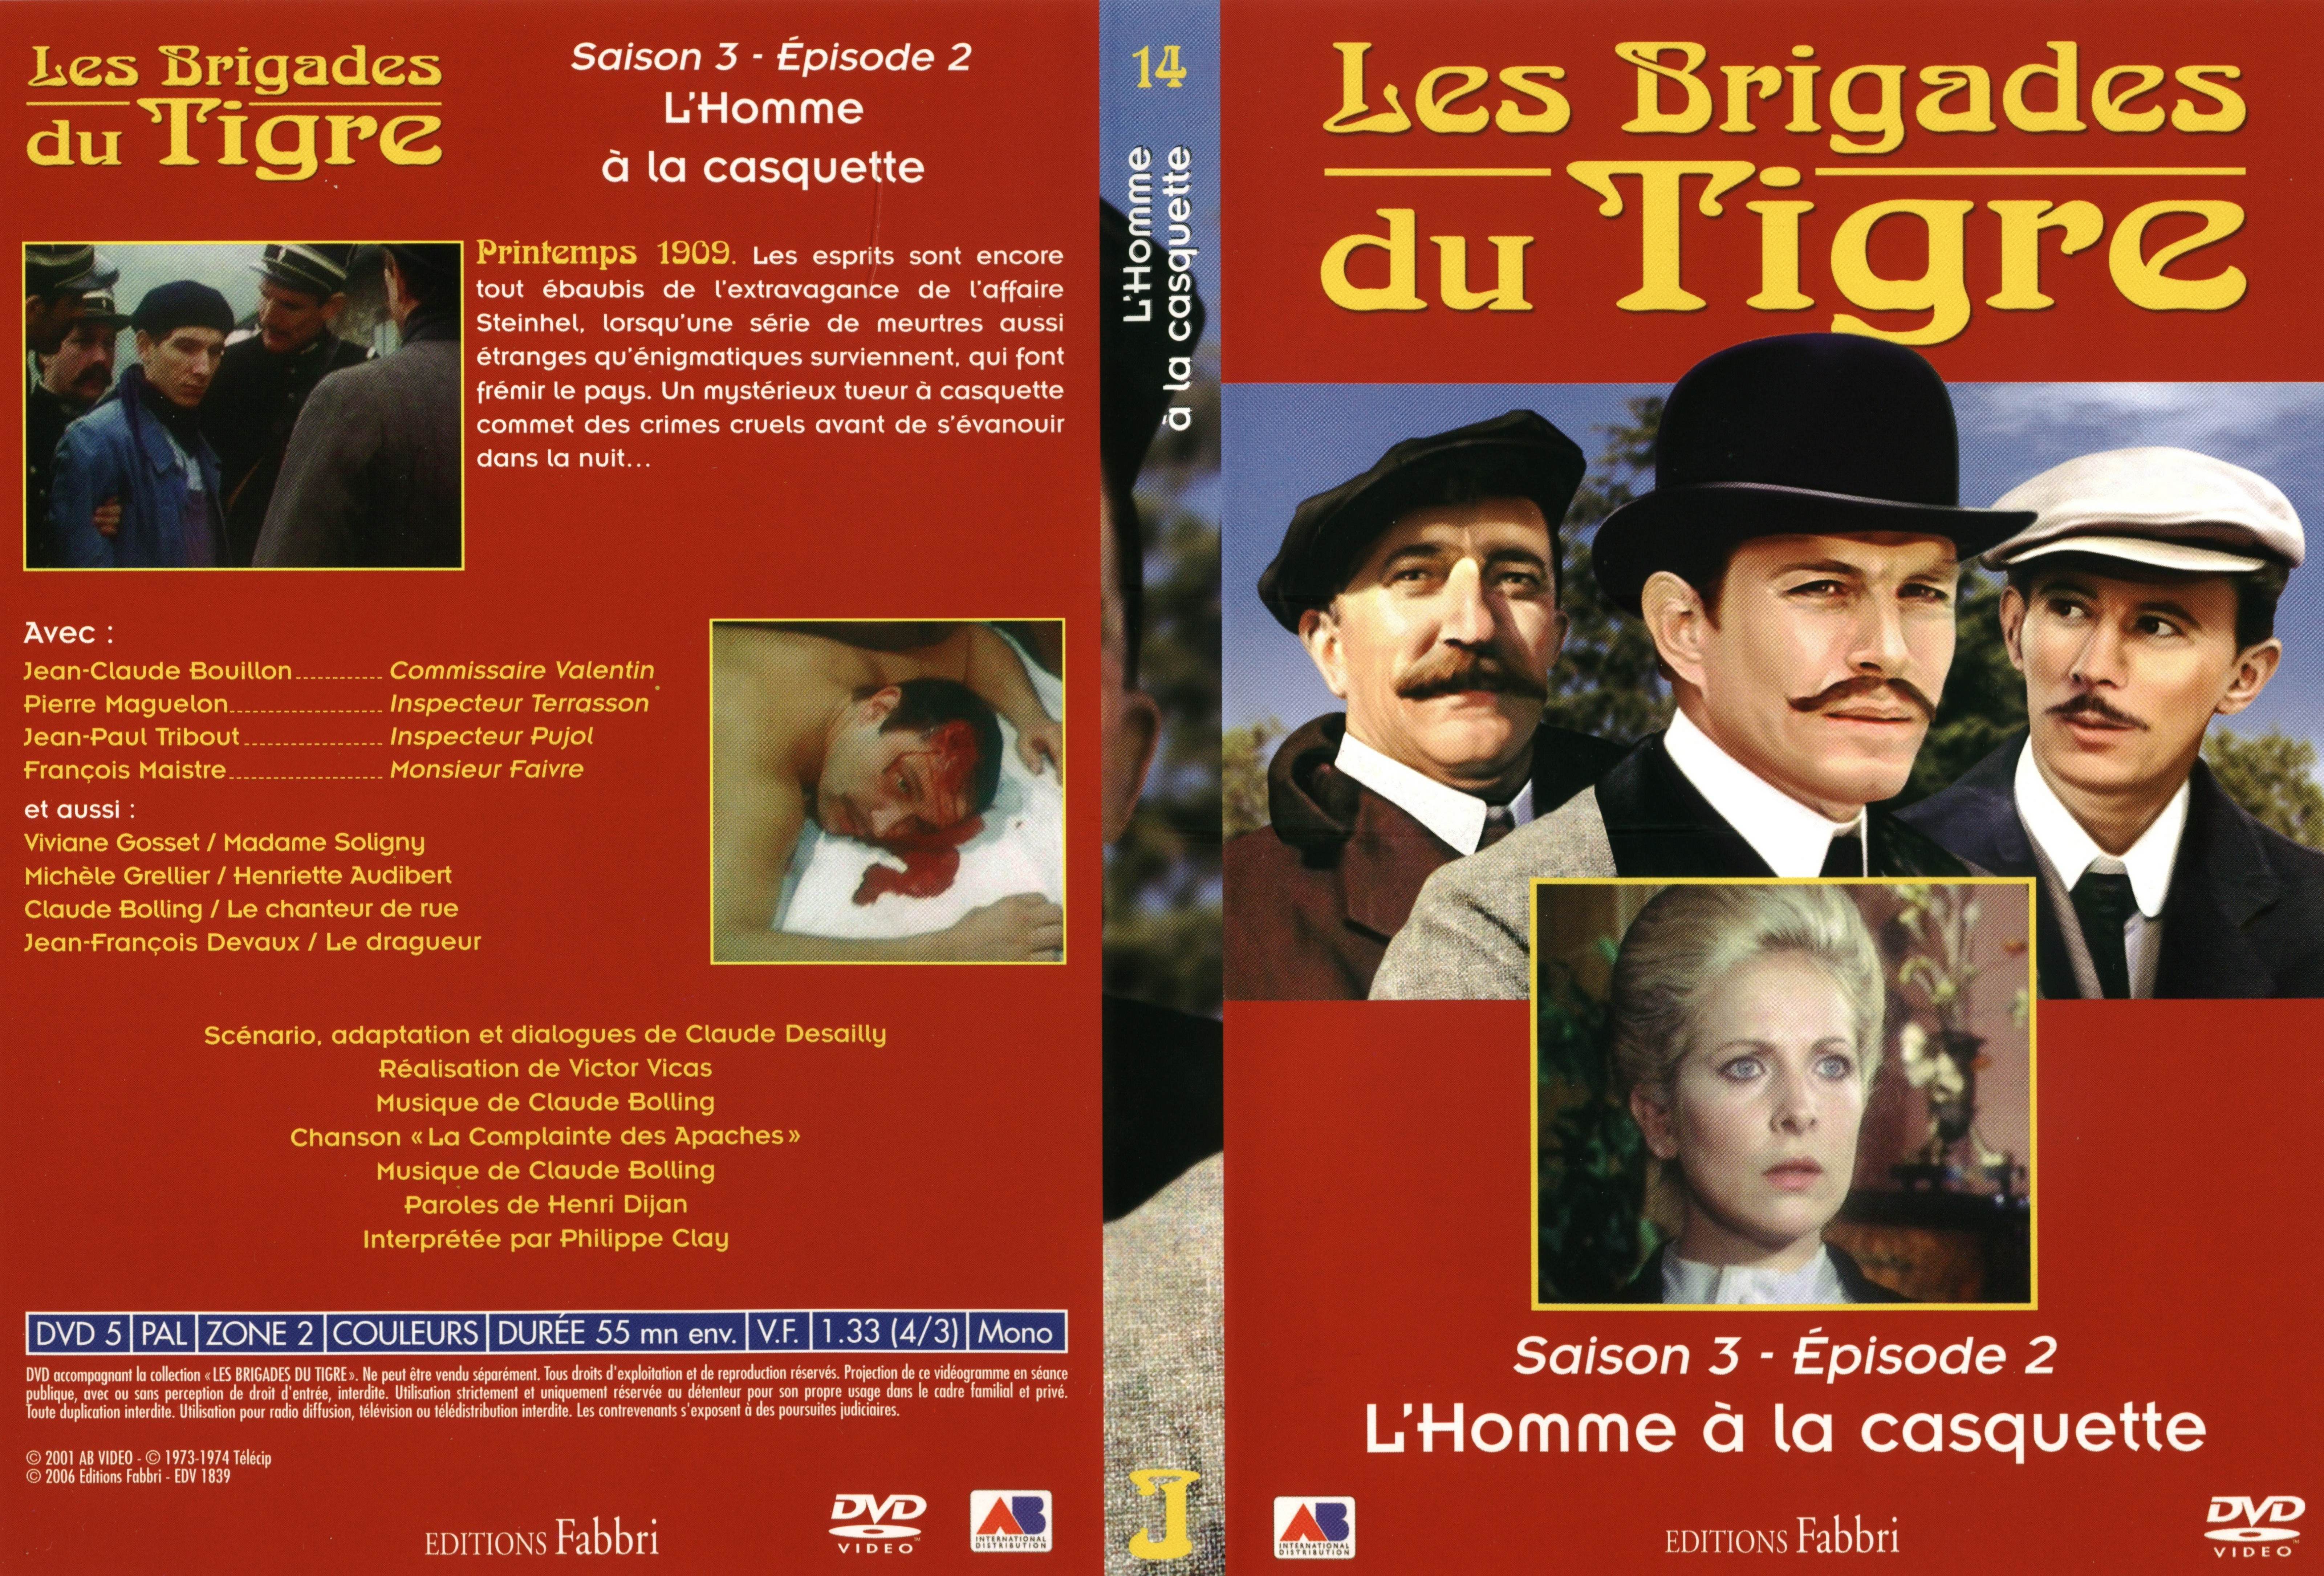 Jaquette DVD Les brigades du tigre saison 3 pisode 2